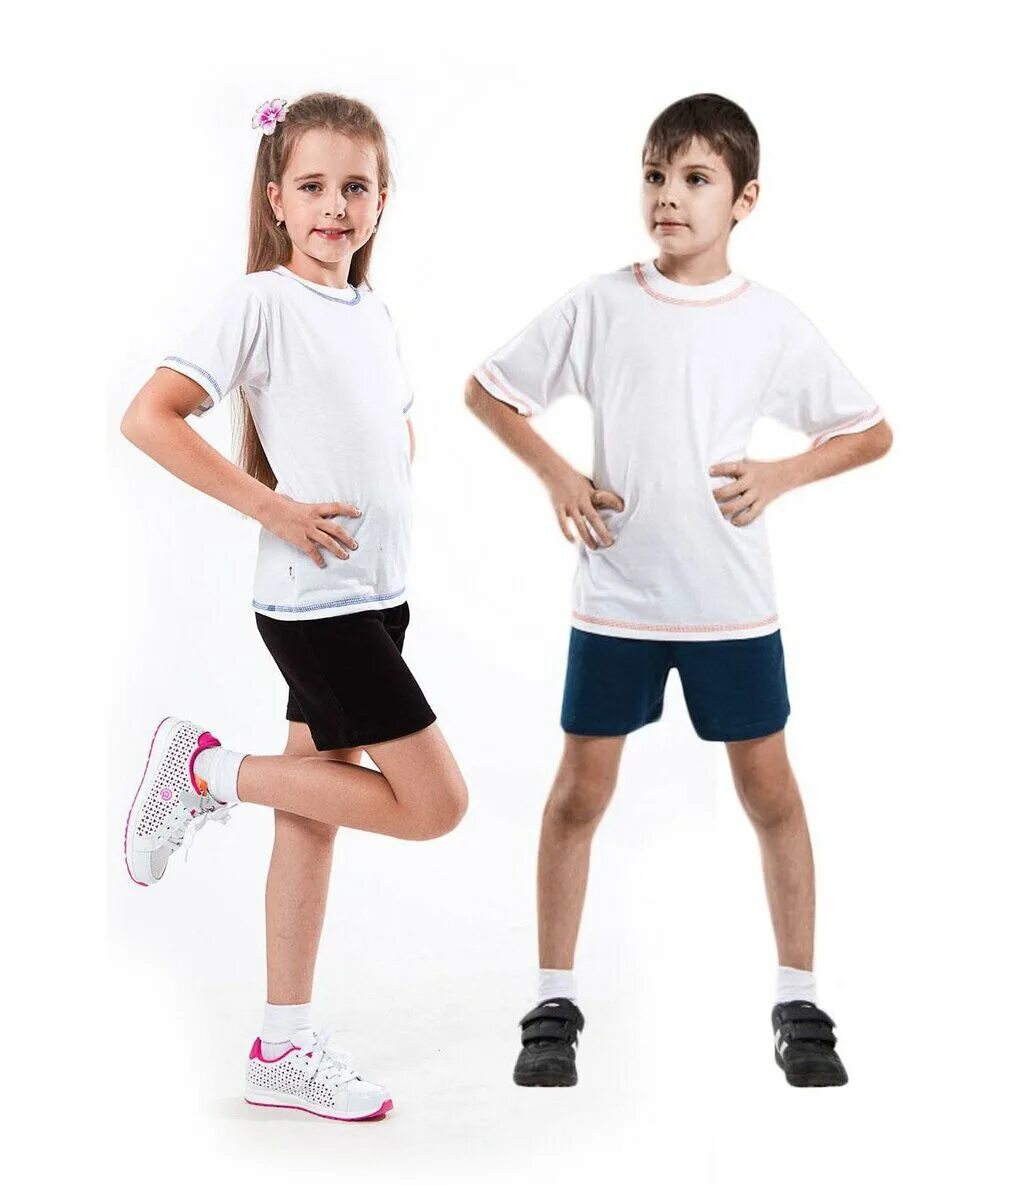 Физкультурная форма. Шорты детские спортивные. Школьная спортивная форма. Дети в спортивной форме.